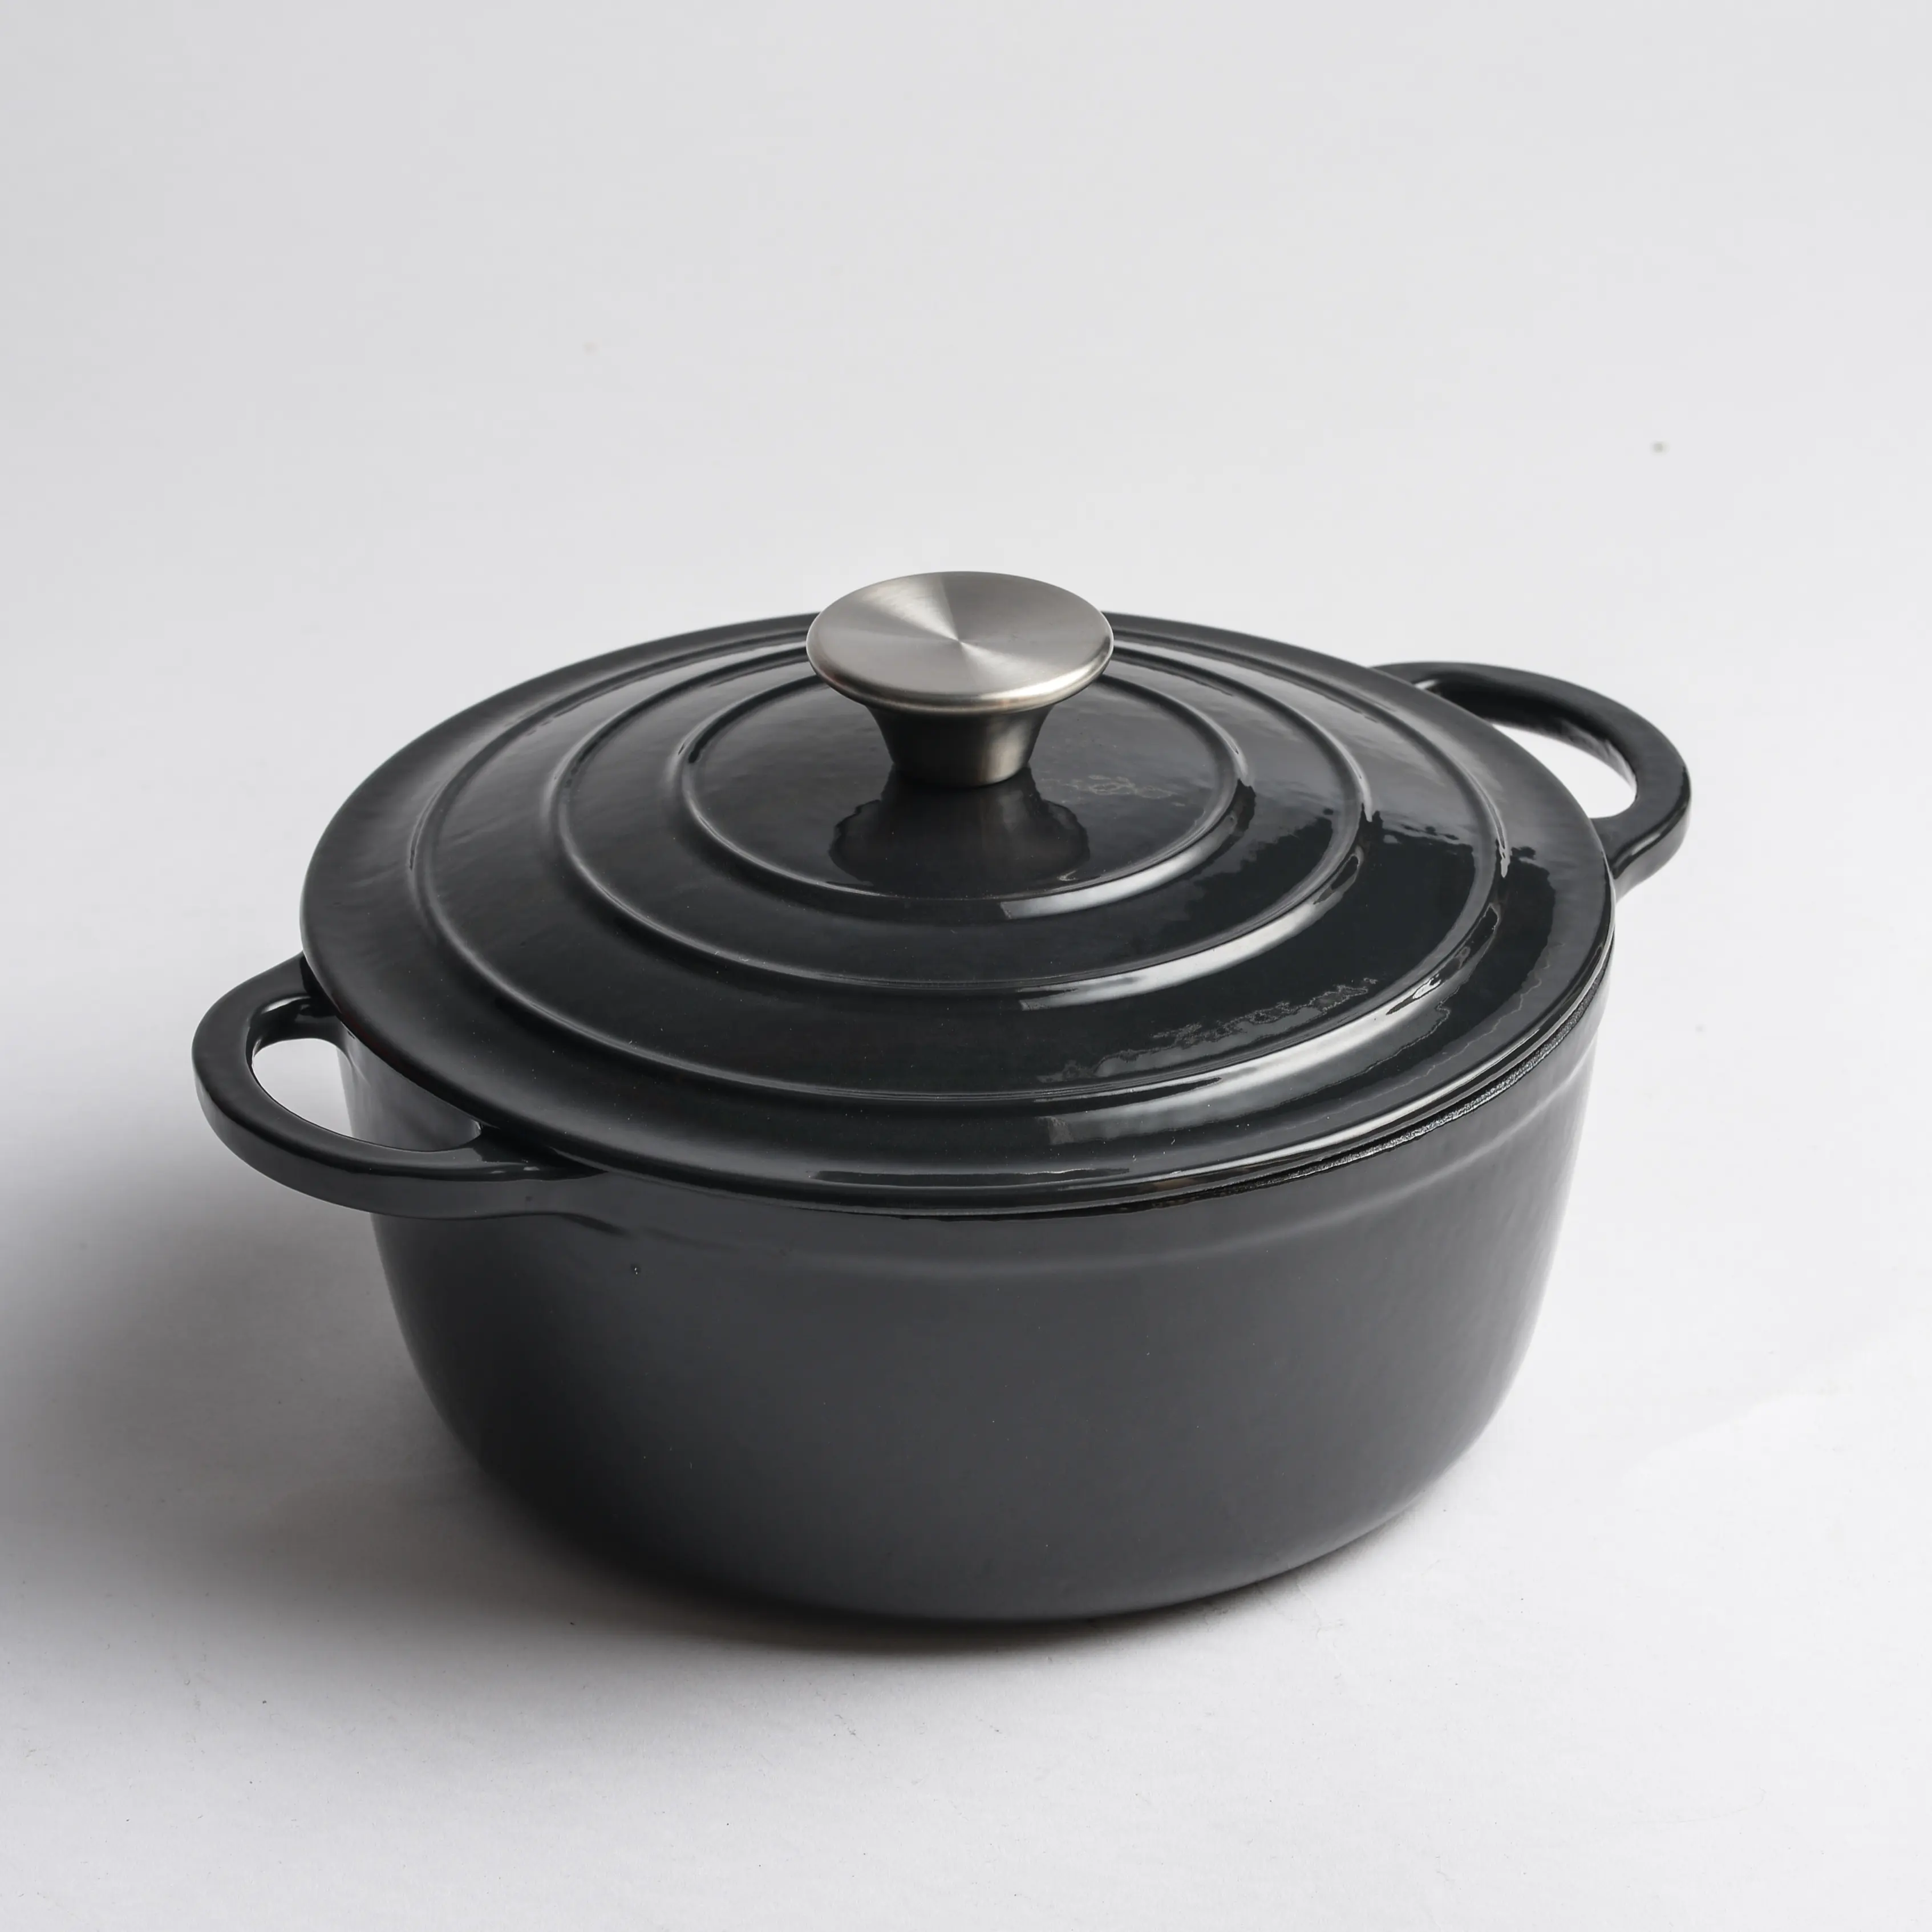 Plain black soup pot enamel cast iron cookware casserole